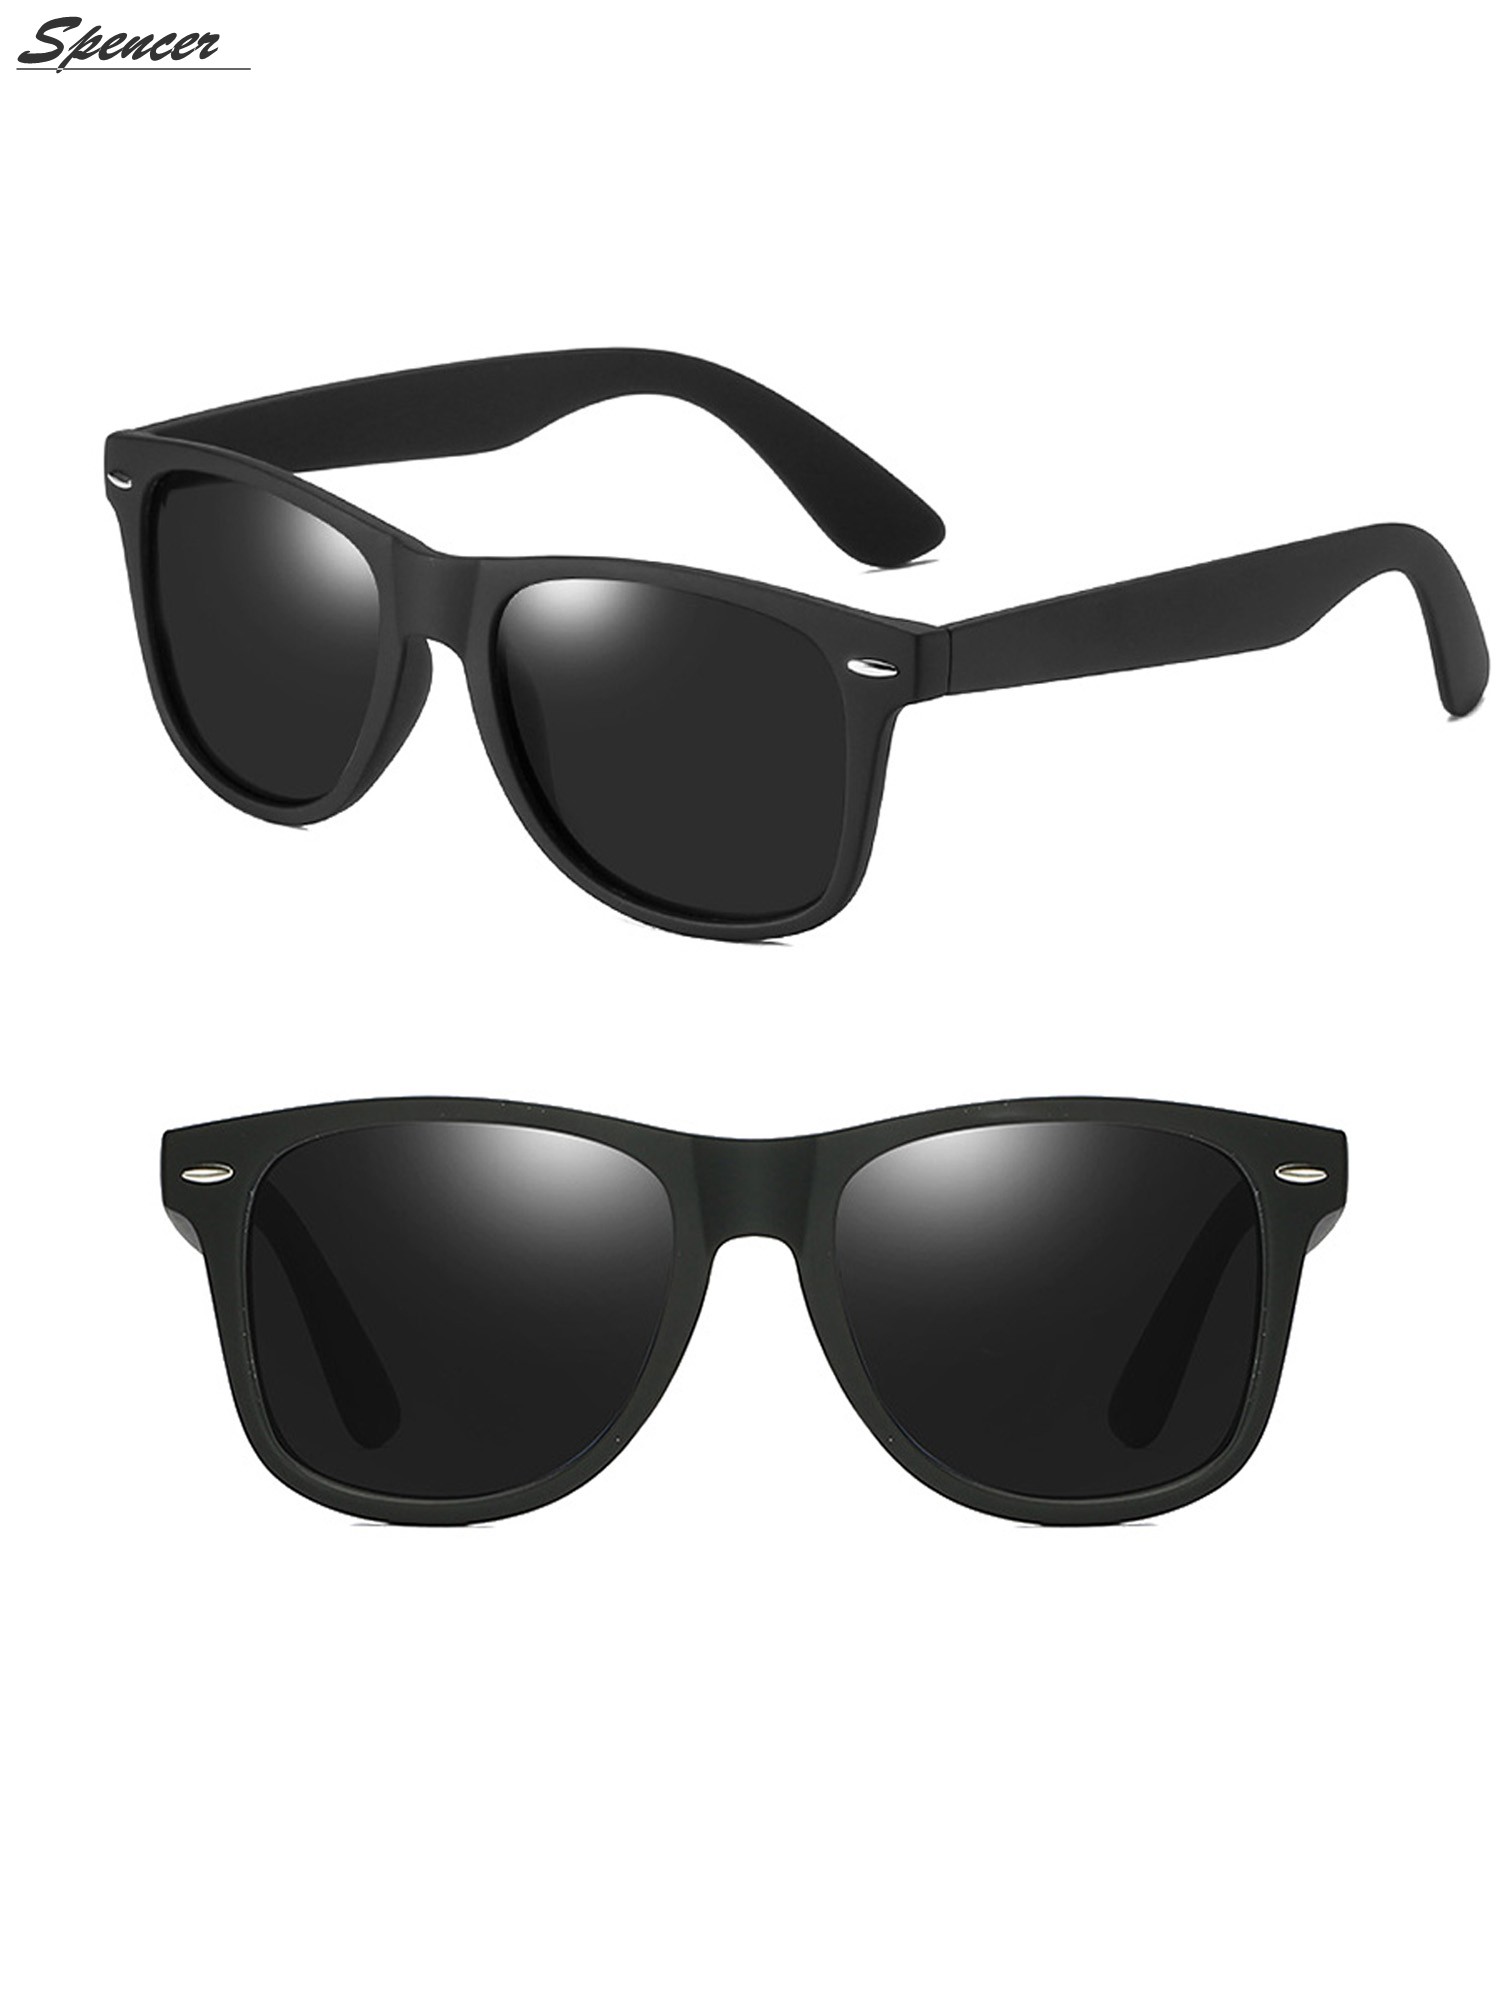 Spencer Retro HD Polarized Colored Mirrored Lens Sunglasses Ultralight Driving UV400 Eyewear Glasses for Men Women "Black+Gray " - image 2 of 6